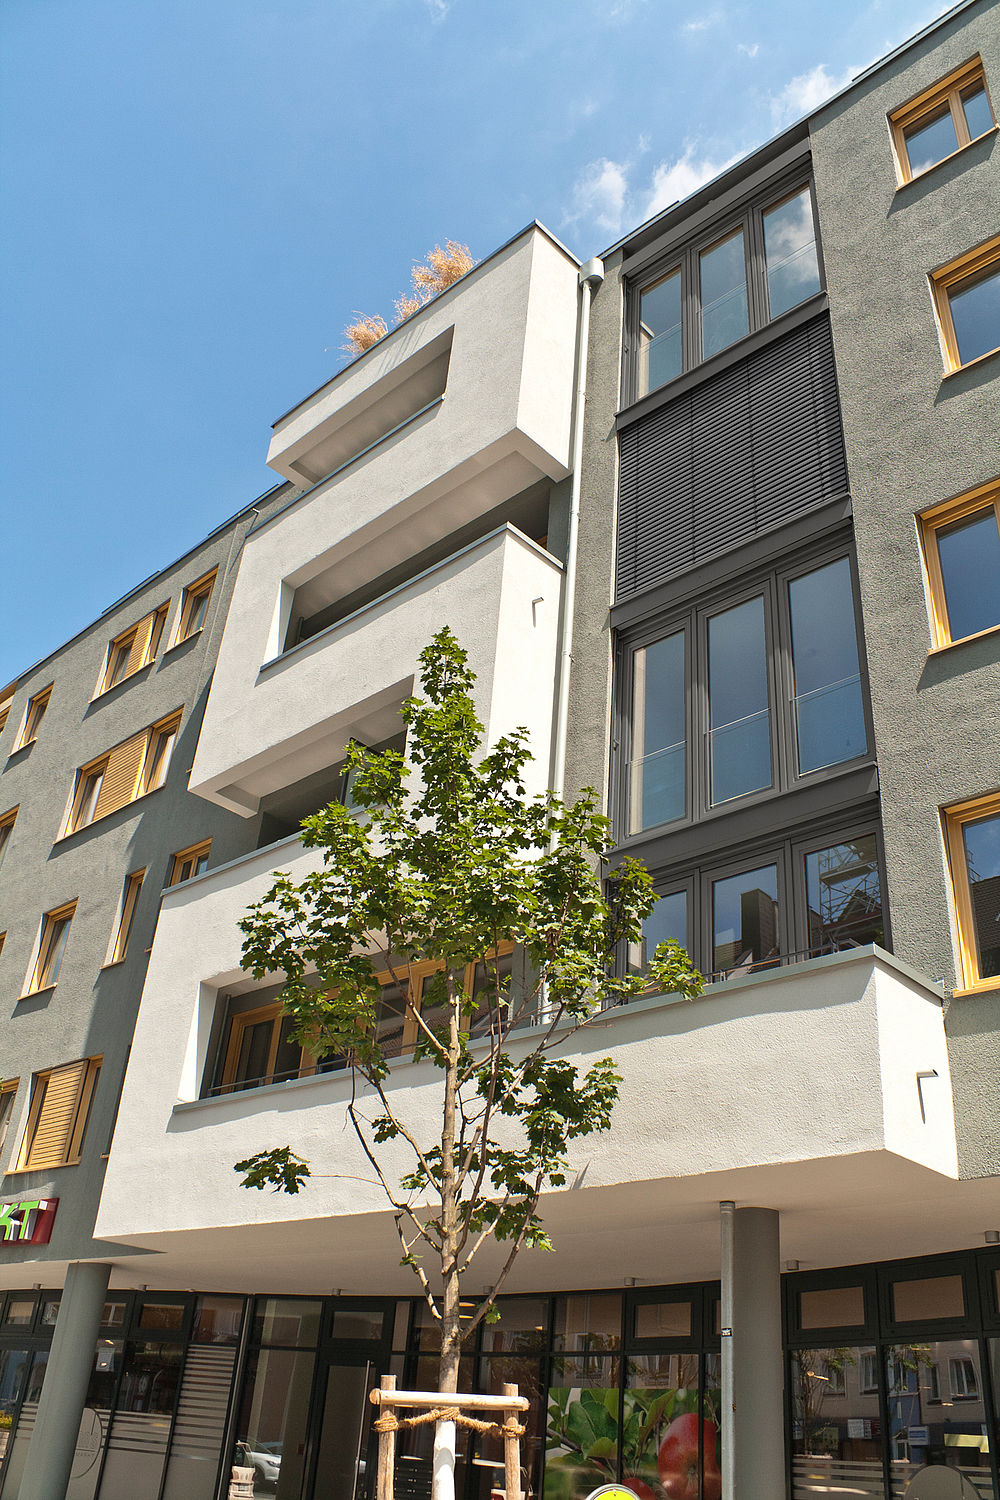 Neubau eines Wohngebäudes mit Einzelhandel in der Lindemannstraße in Dortmund durch das Düsseldorfer Architekturbüro greeen! architects